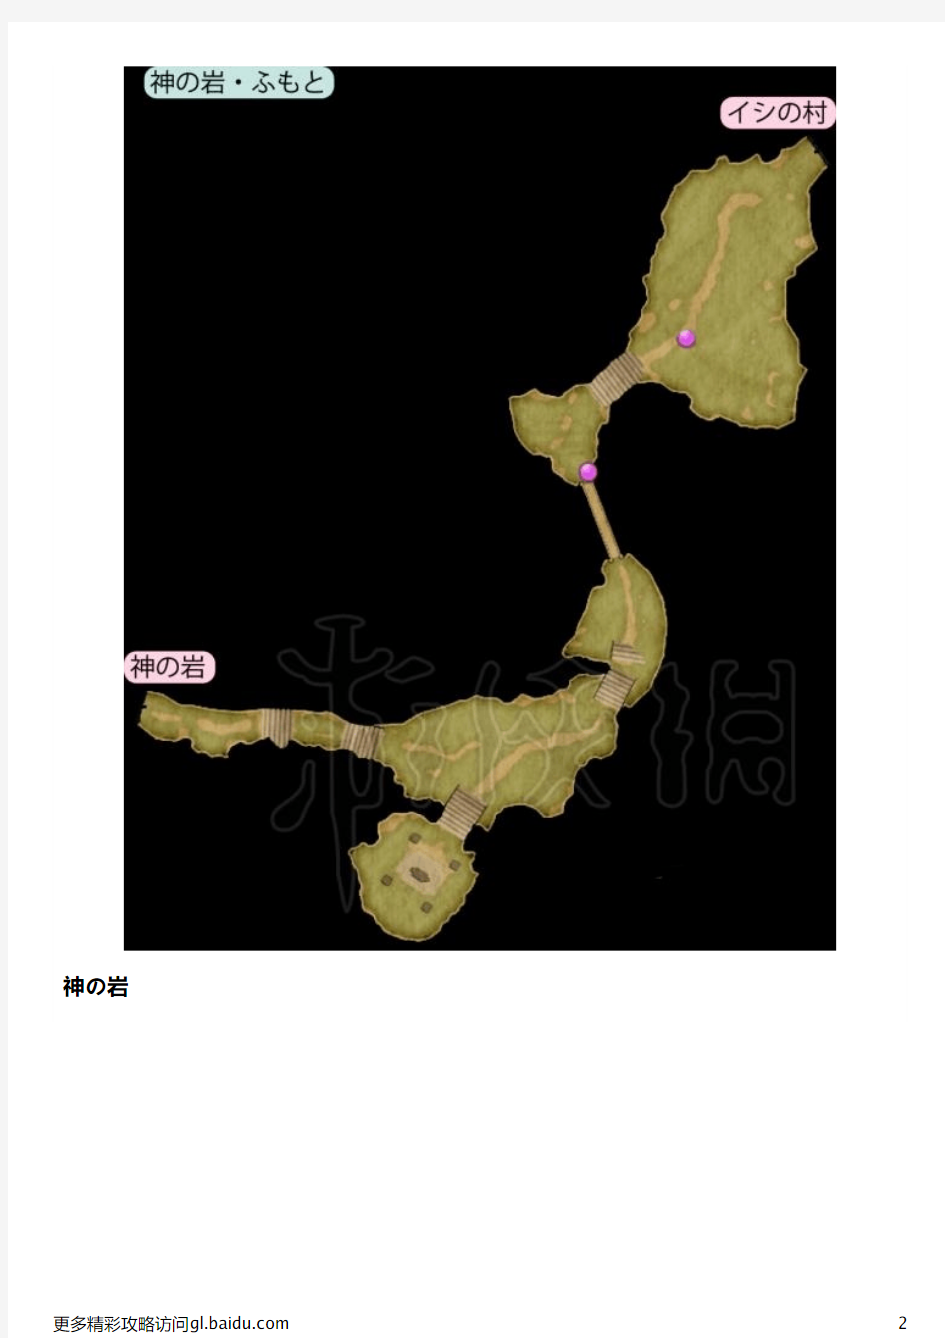 《勇者斗恶龙11》全地图收集要素详